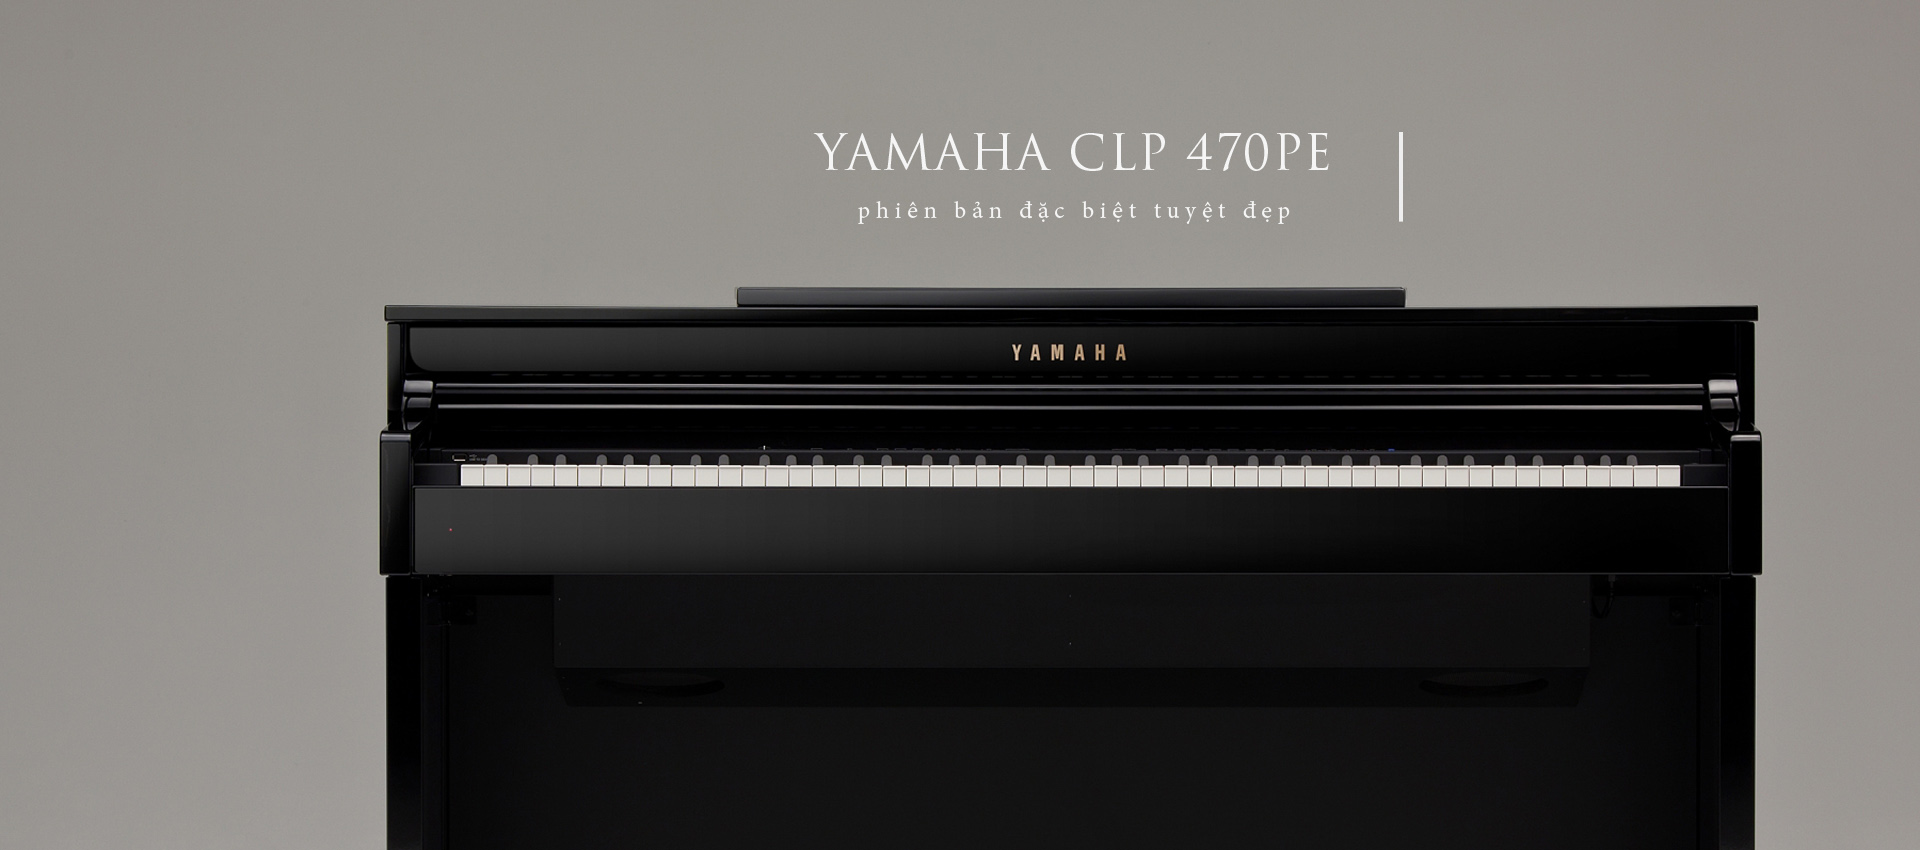 Yamaha CLP 470